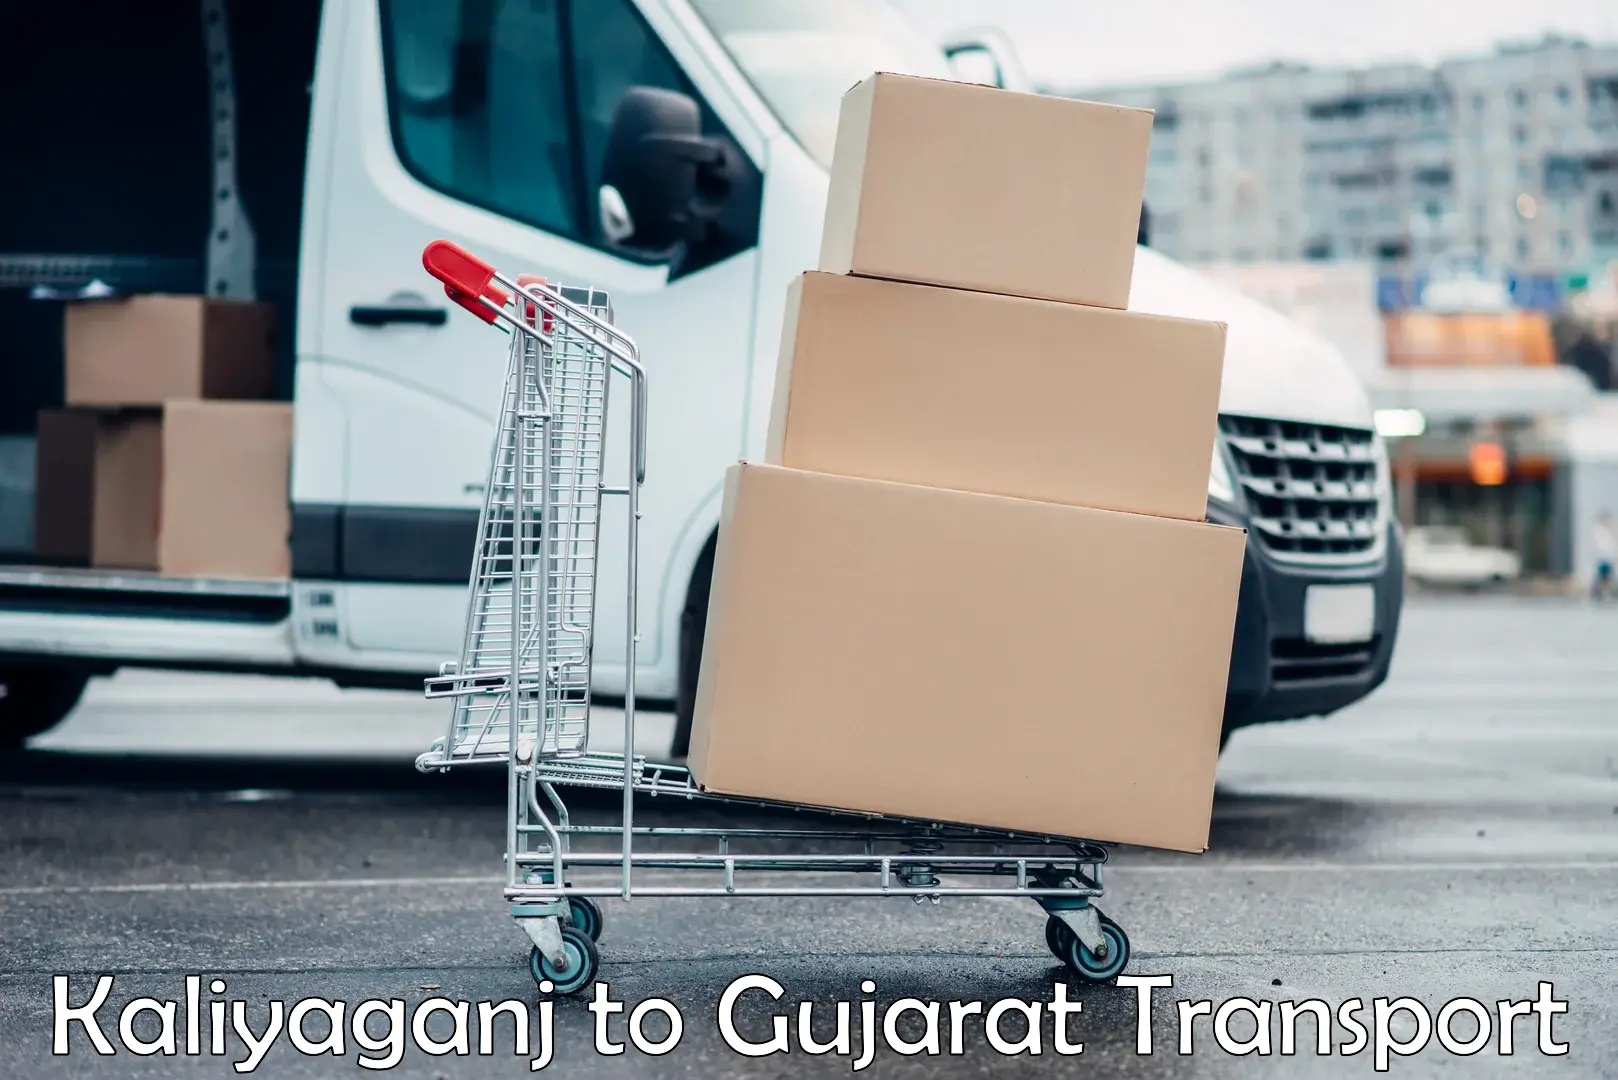 Furniture transport service in Kaliyaganj to Dayapar